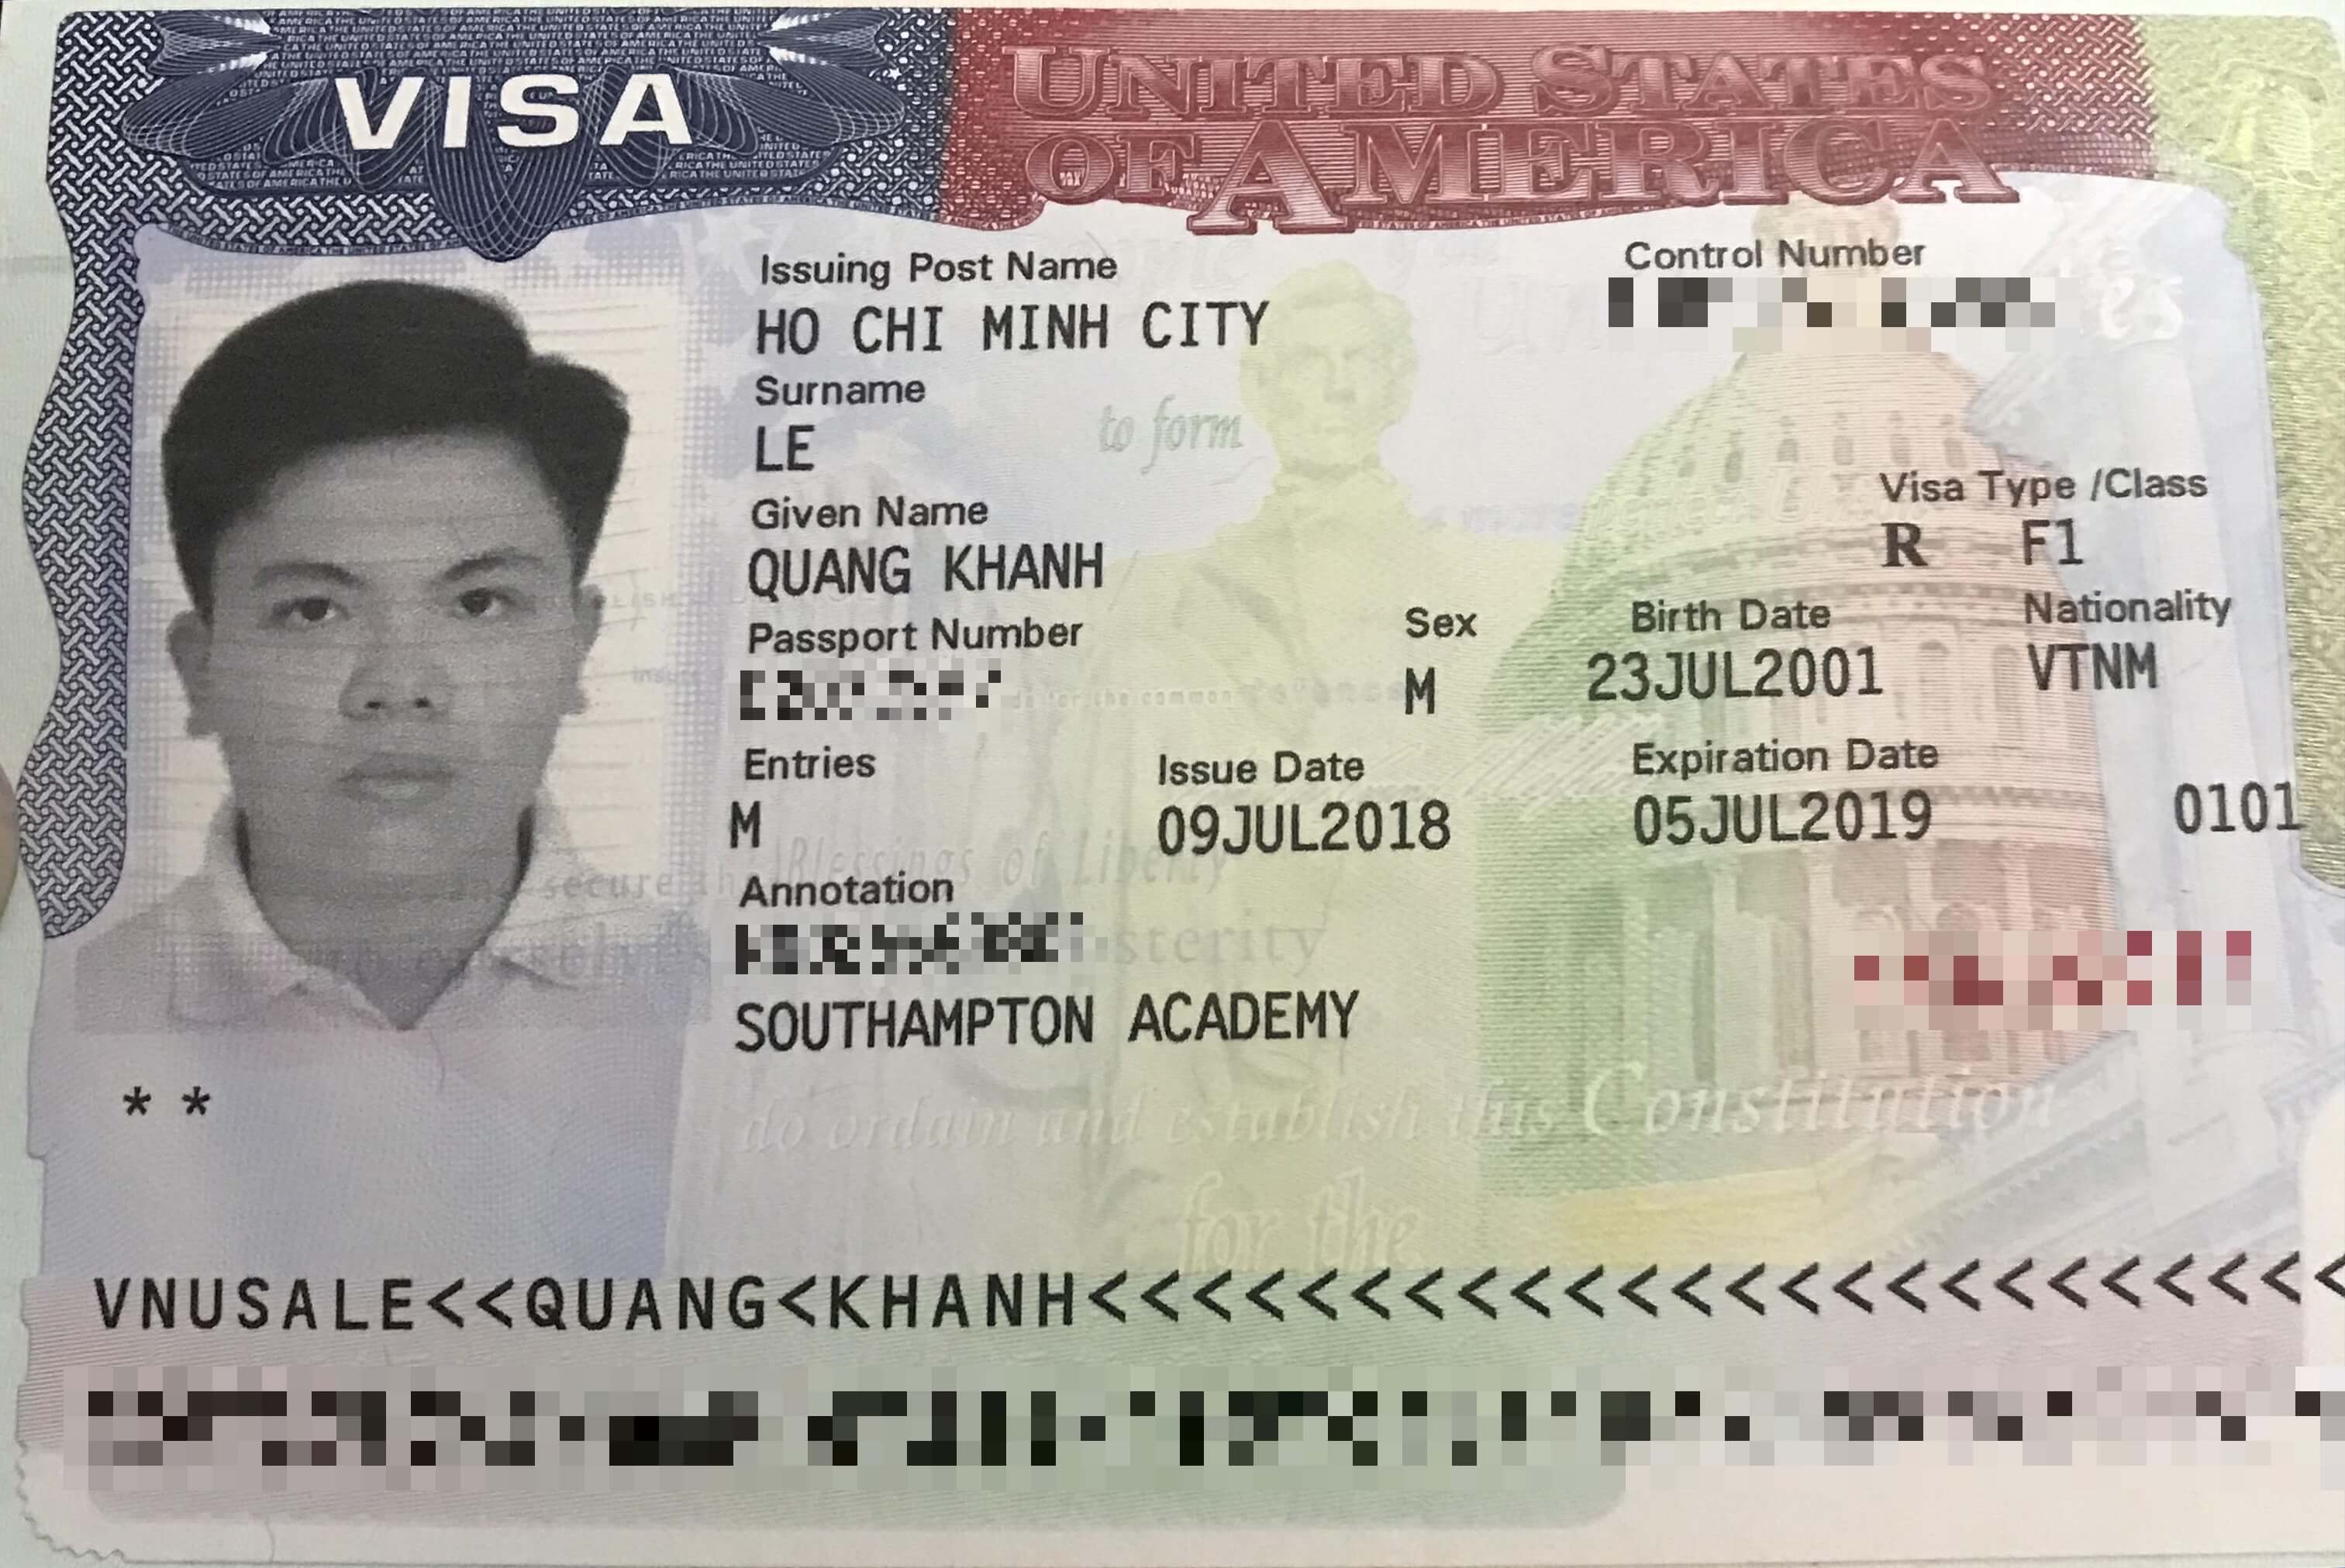 Chúc mừng bạn Lê Quang Khánh đã đậu visa du học Mỹ